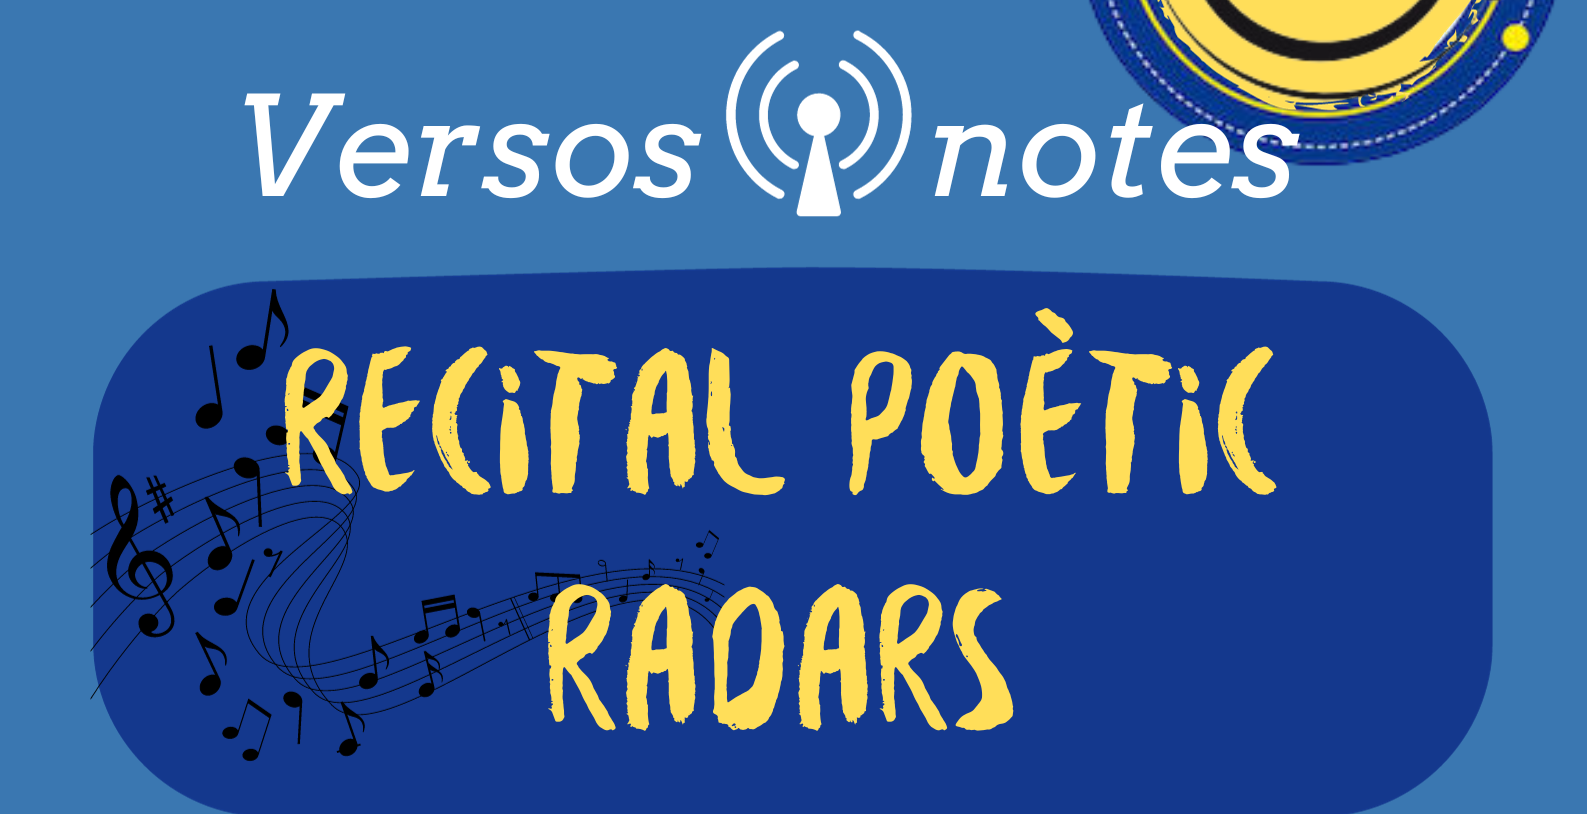 Versos i notes, recital poètic de Radars 1-12-23